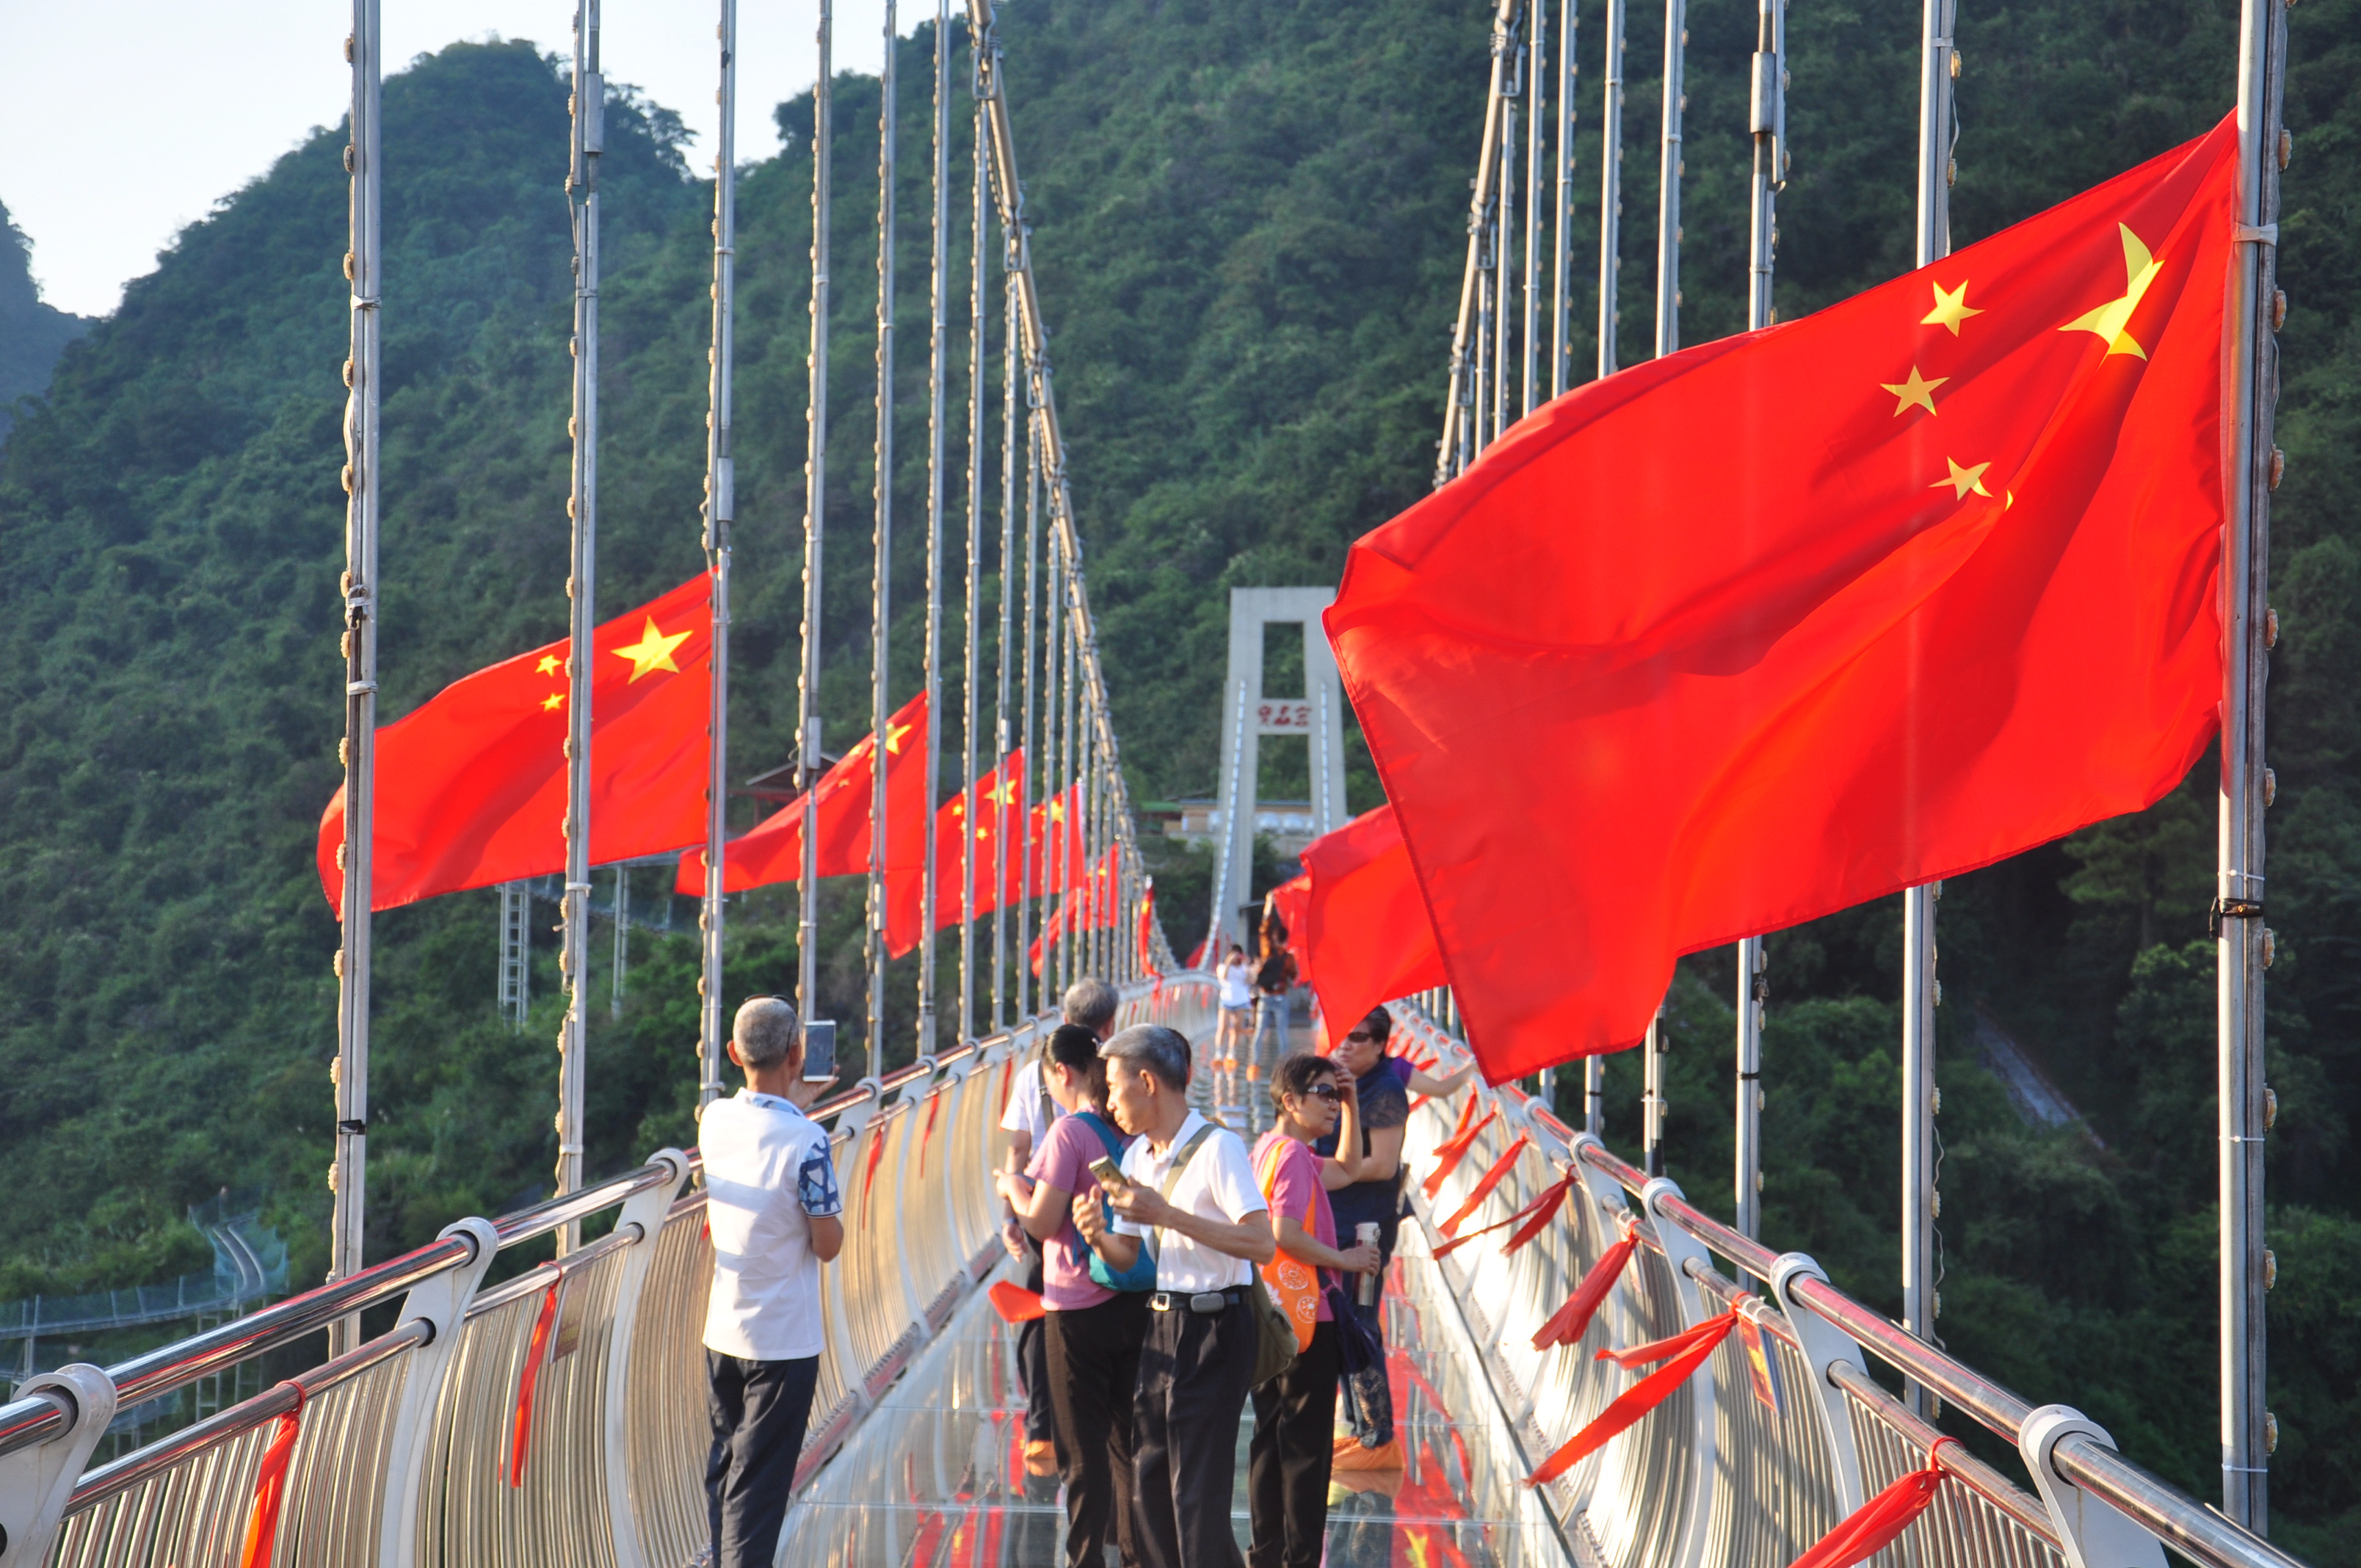 游客走在飘着红旗的玻璃桥上